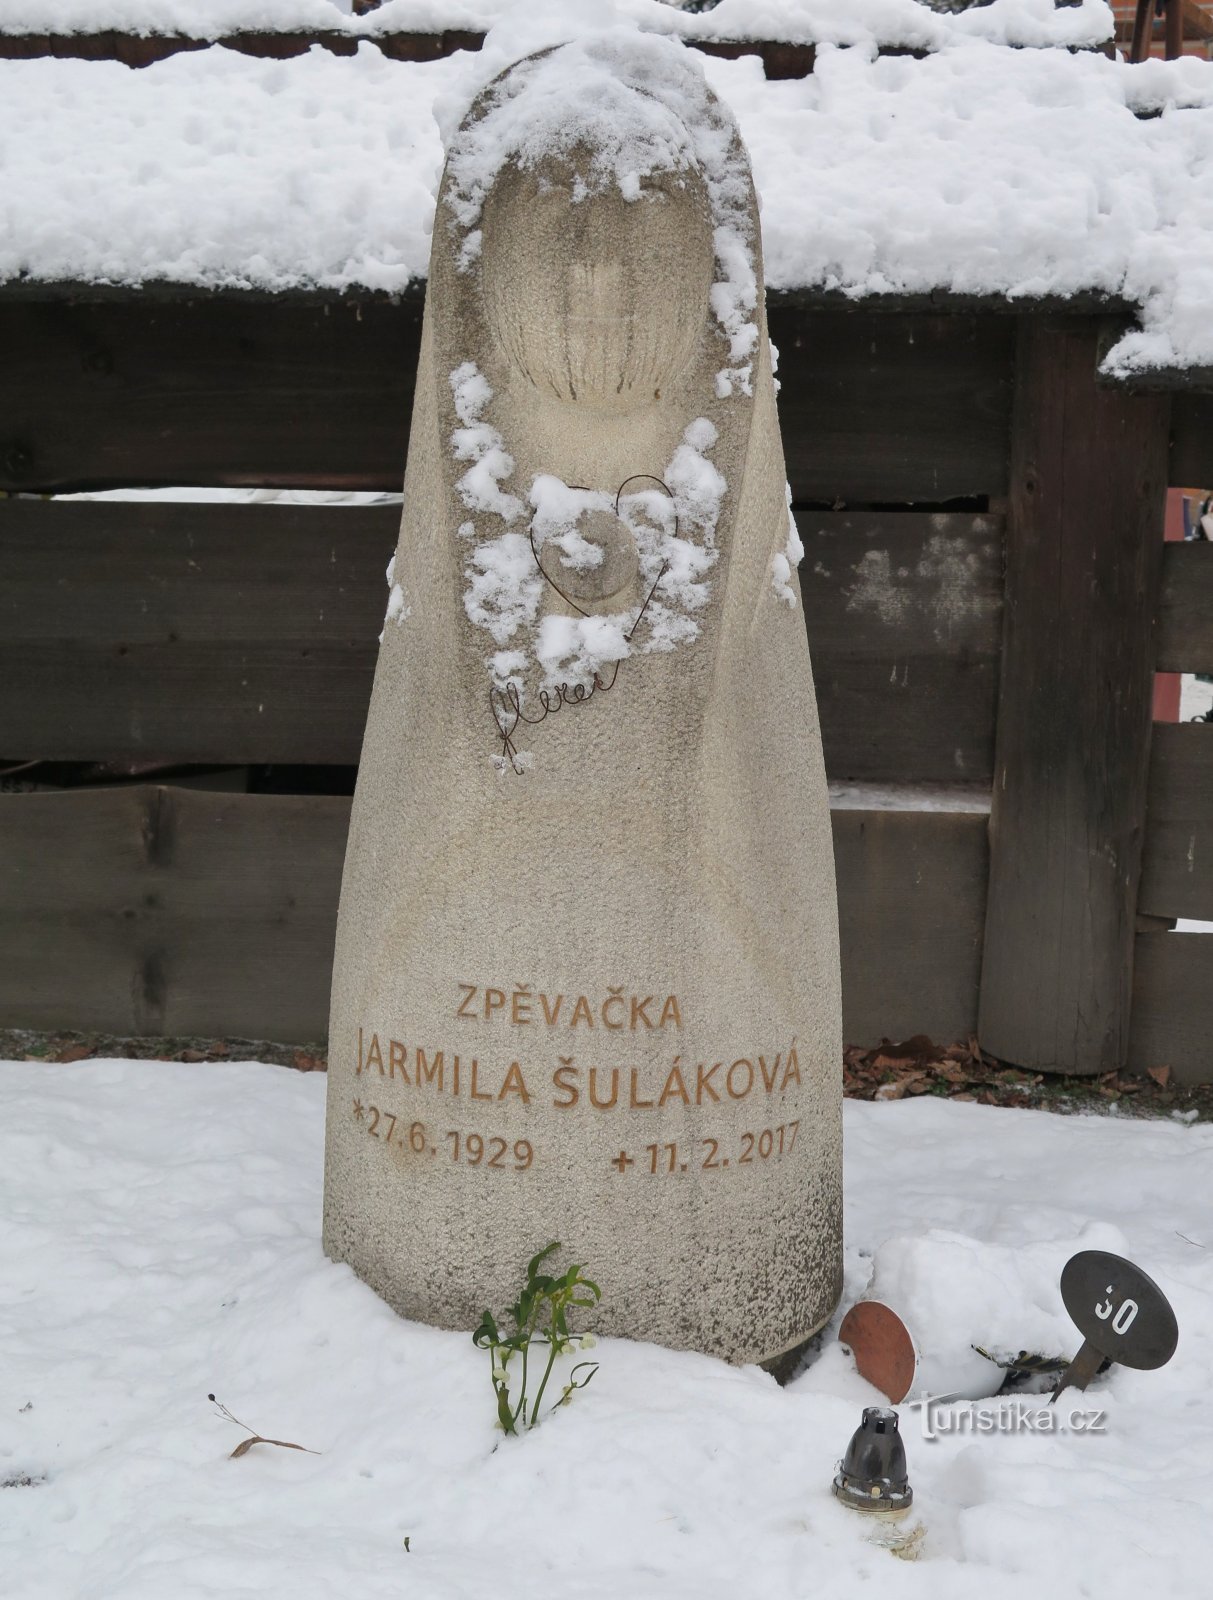 Rožnov pod Radhoštěm – mormântul memorial al reginei valahe Jarmila Šuláková